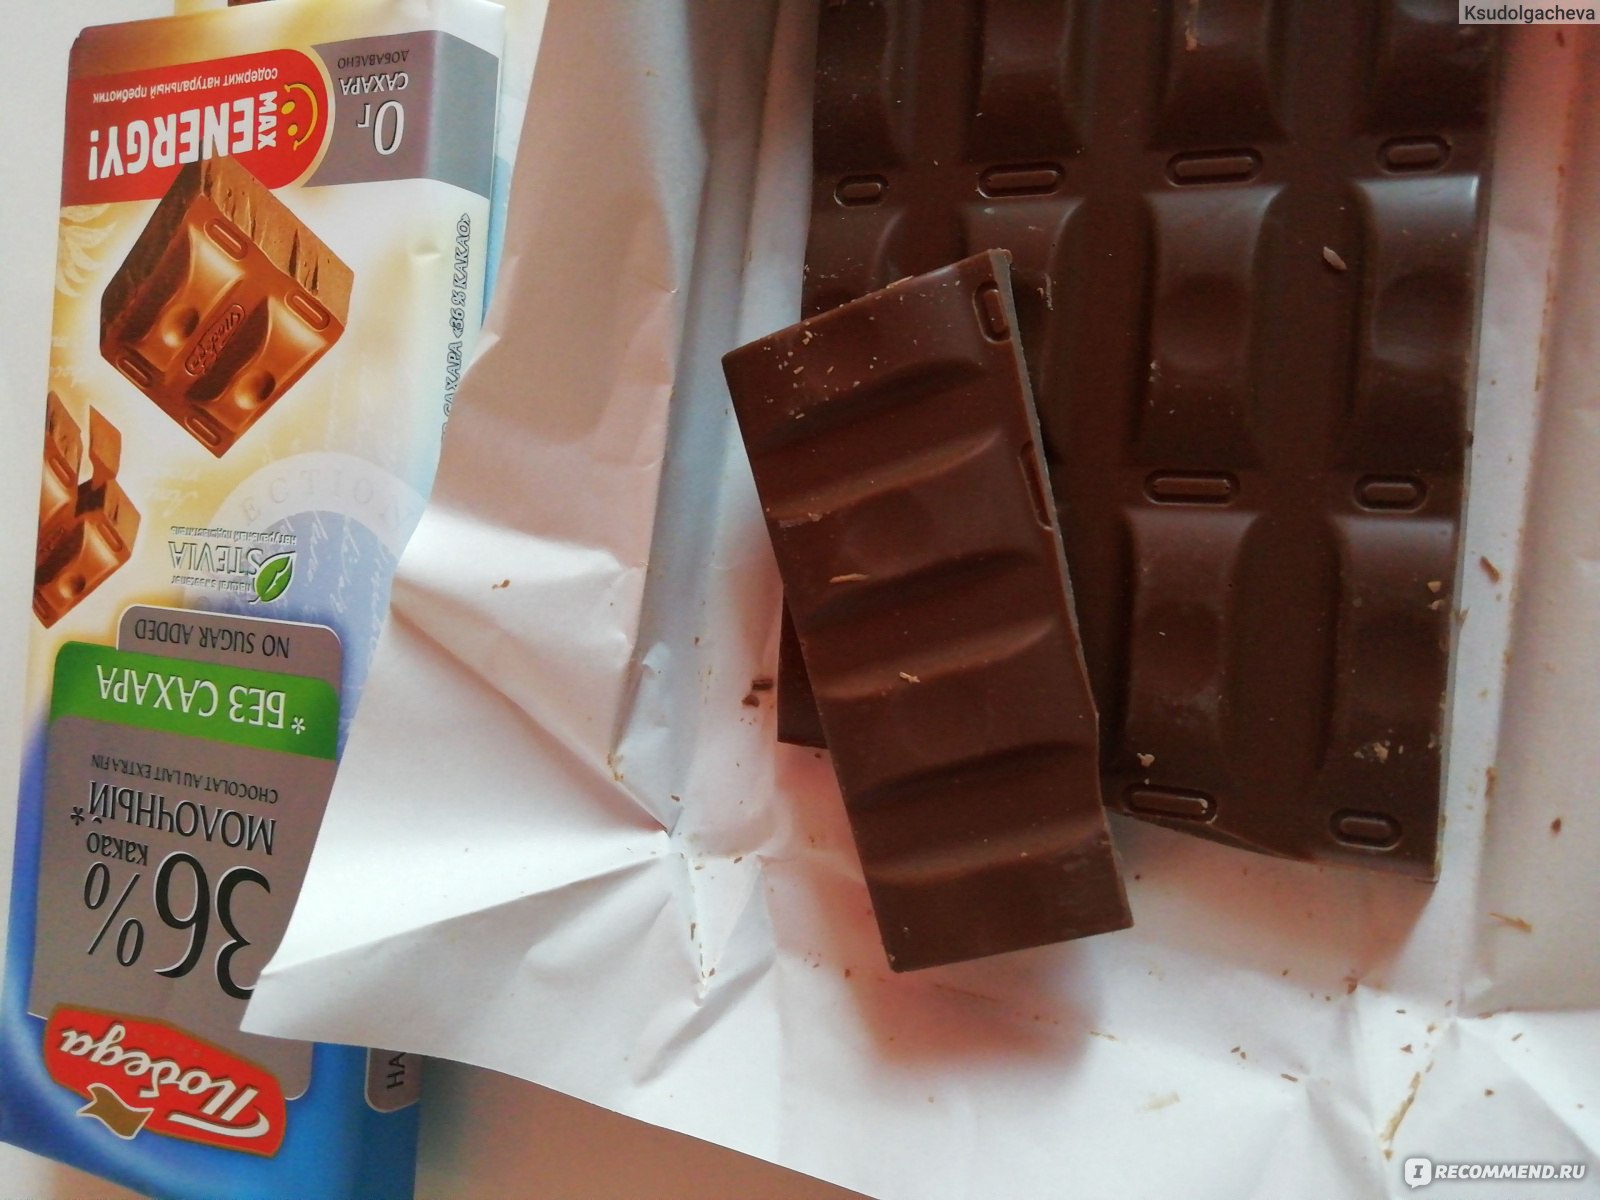 Шоколад победа вкуса молочный 36% без сахара